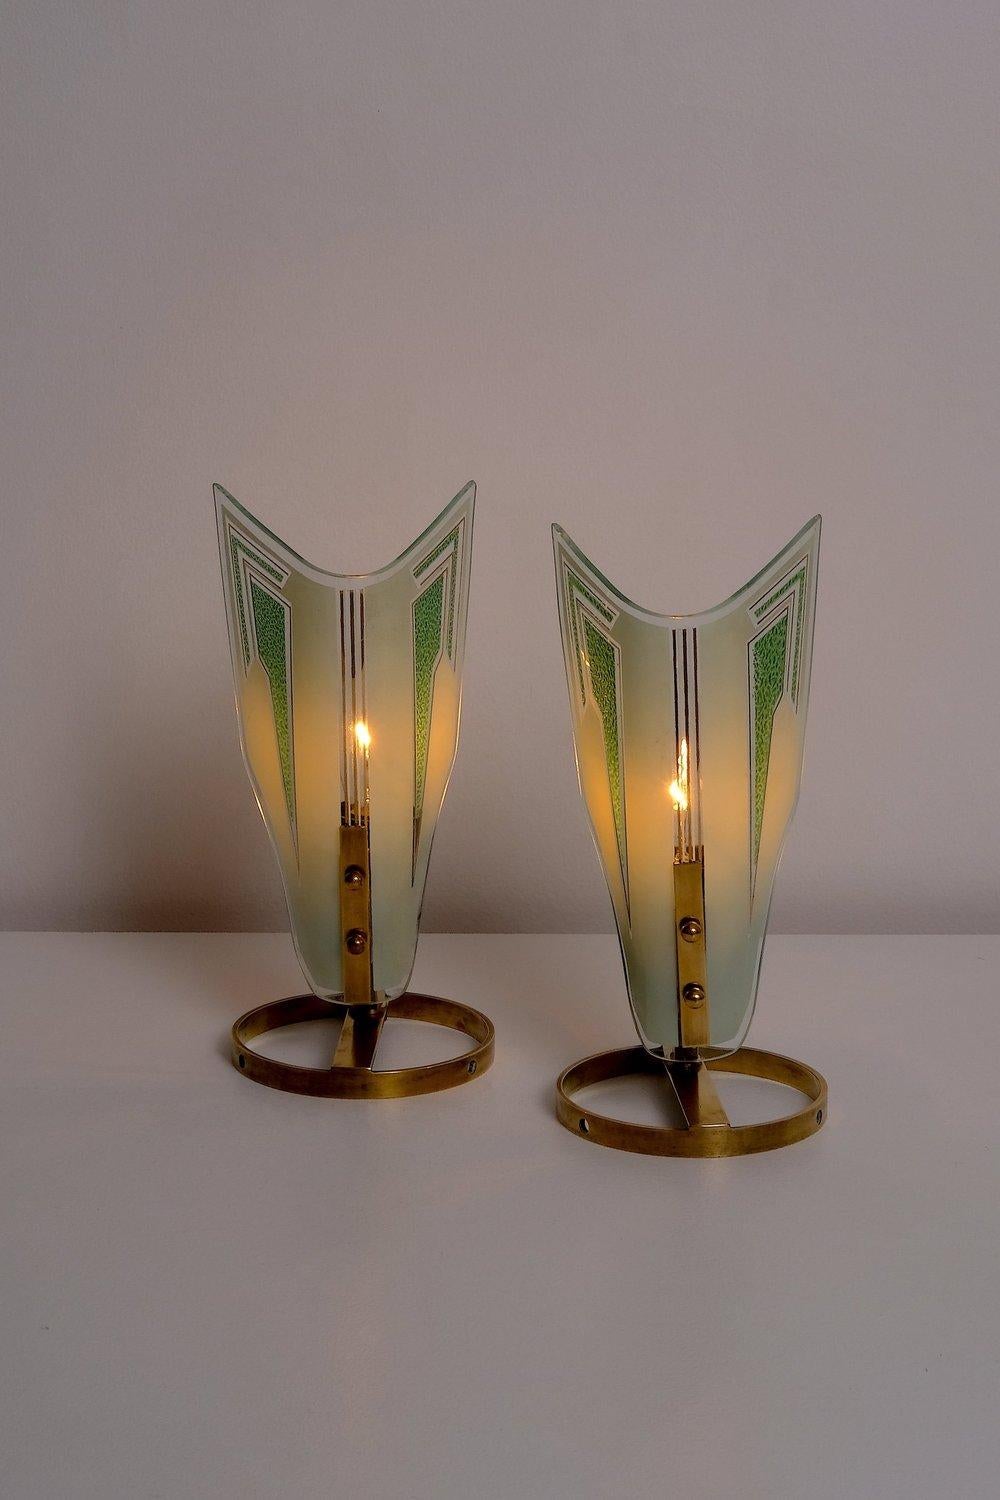 Tischlampen im Art-Déco-Stil aus der Mitte des Jahrhunderts, hergestellt in Italien in den 1950er Jahren. Geätztes Glas auf Messingkörper. 20 bis 40 Watt E-14 (europäische Glühbirne) oder höher, wenn LED/CFL.
 